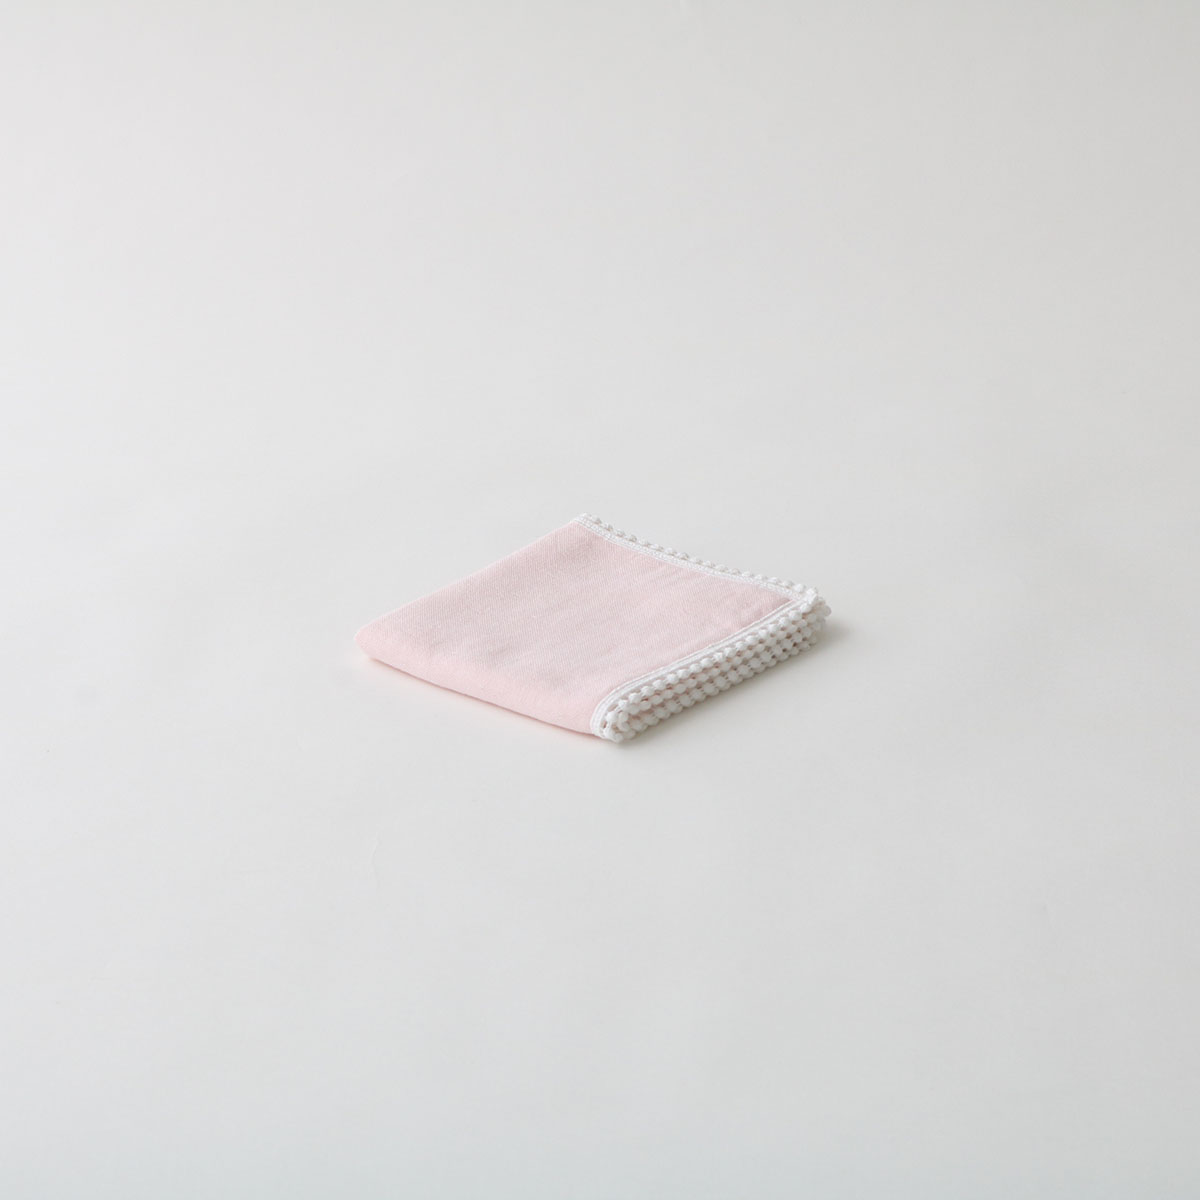 超甘撚り&パイルガーゼレースハンカチセット(ライトパープル・ピンク) フリー FREE